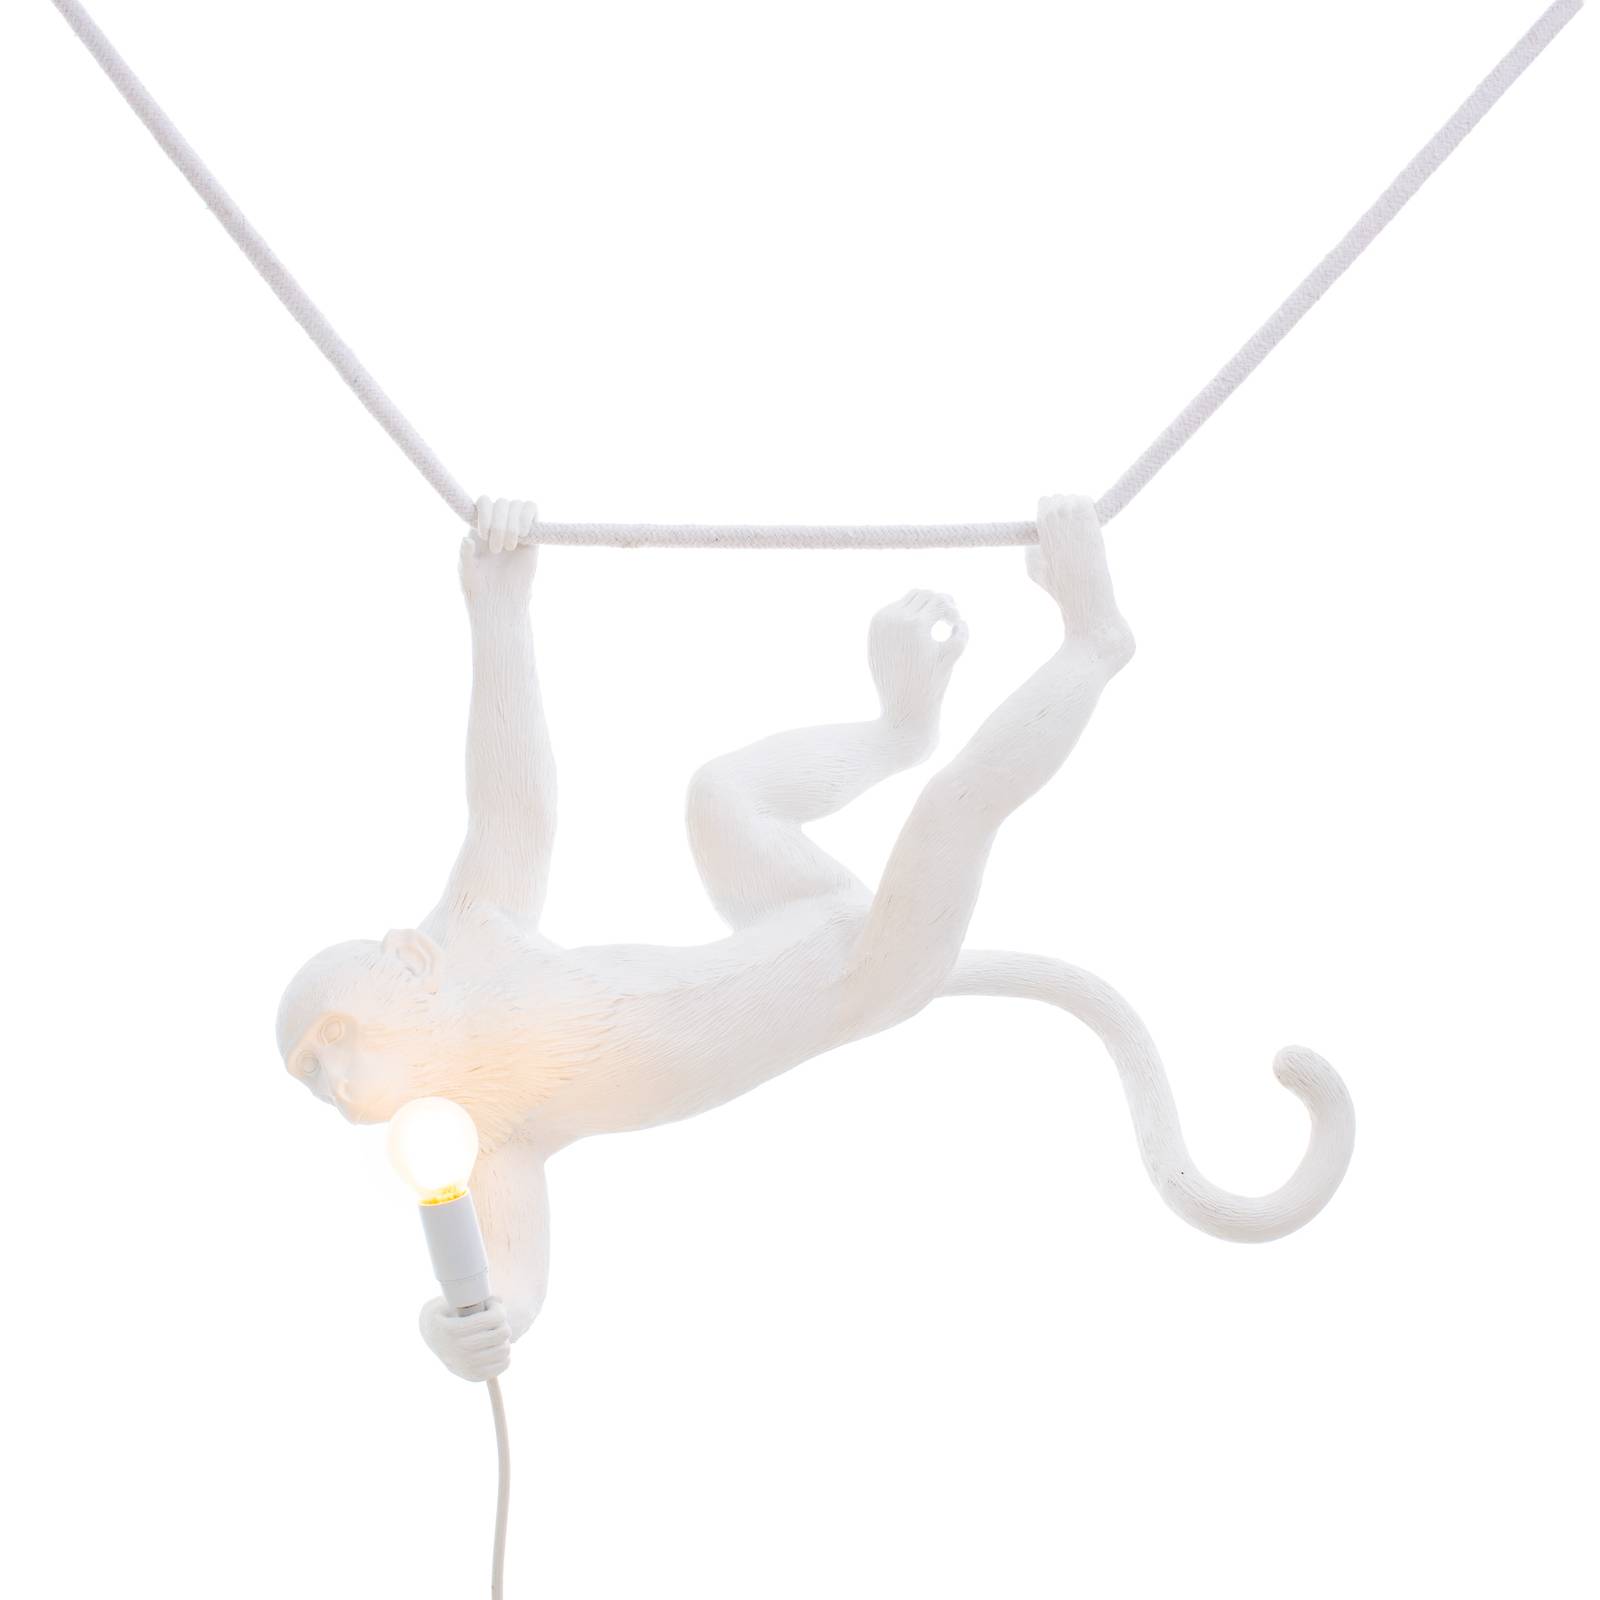 Seletti led dekor függő lámpa monkey lamp fehér rezgő